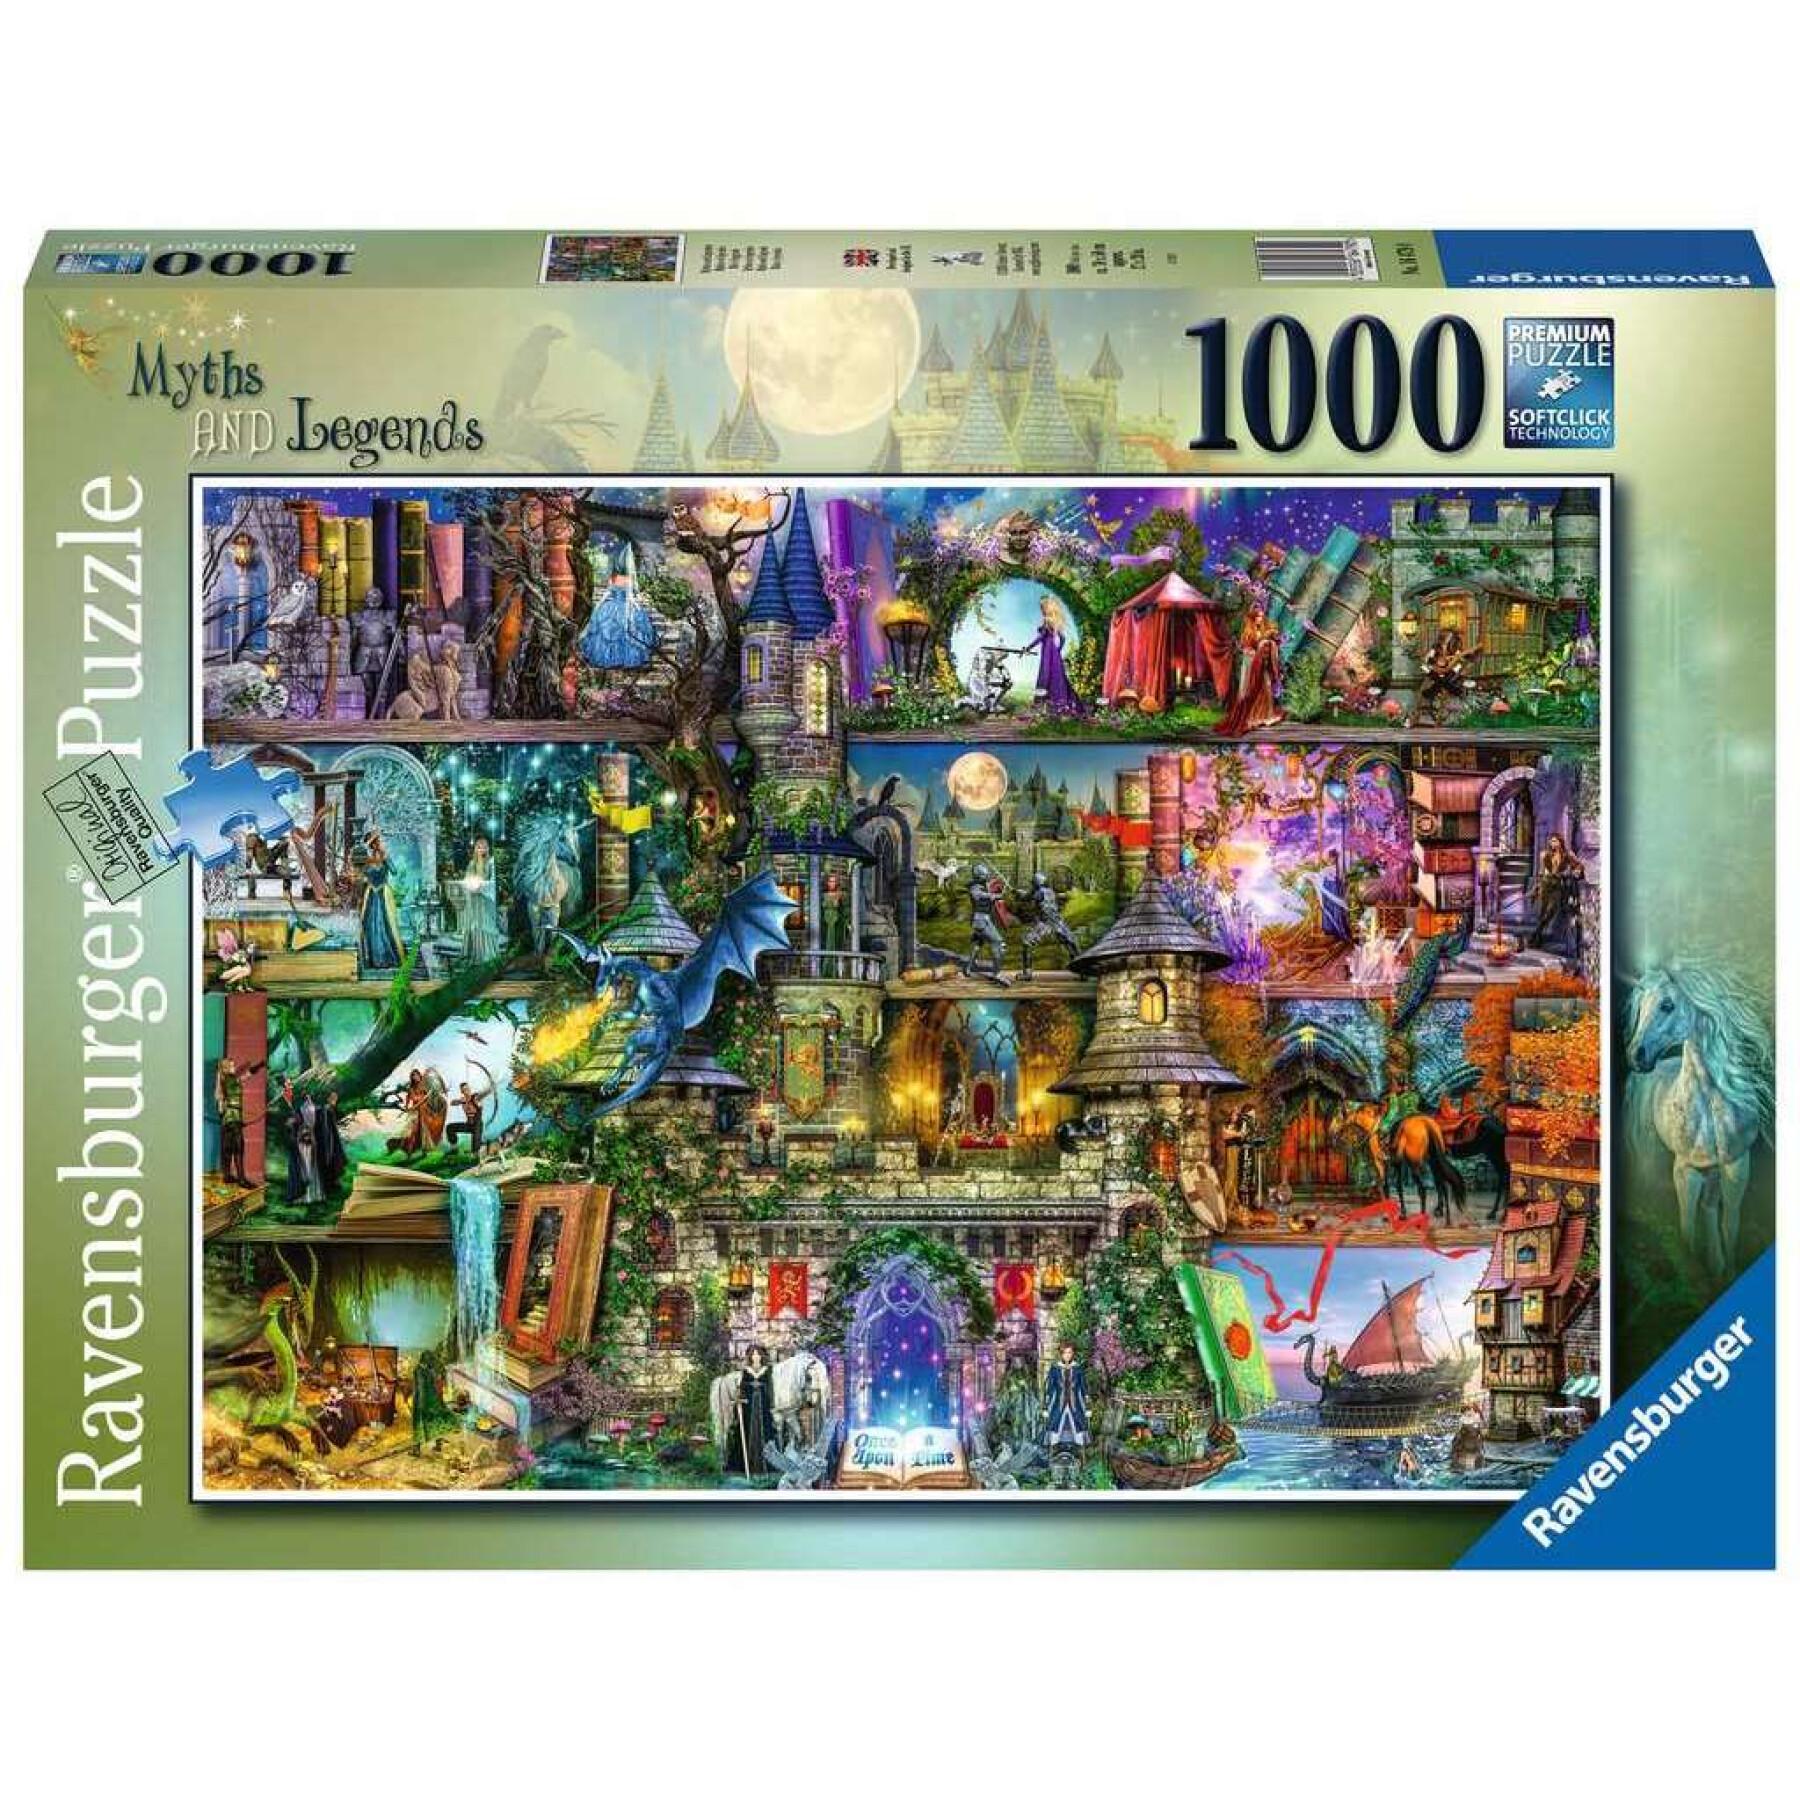 Puzzle de 1000 pièces Mythes et légendes Ravensburger